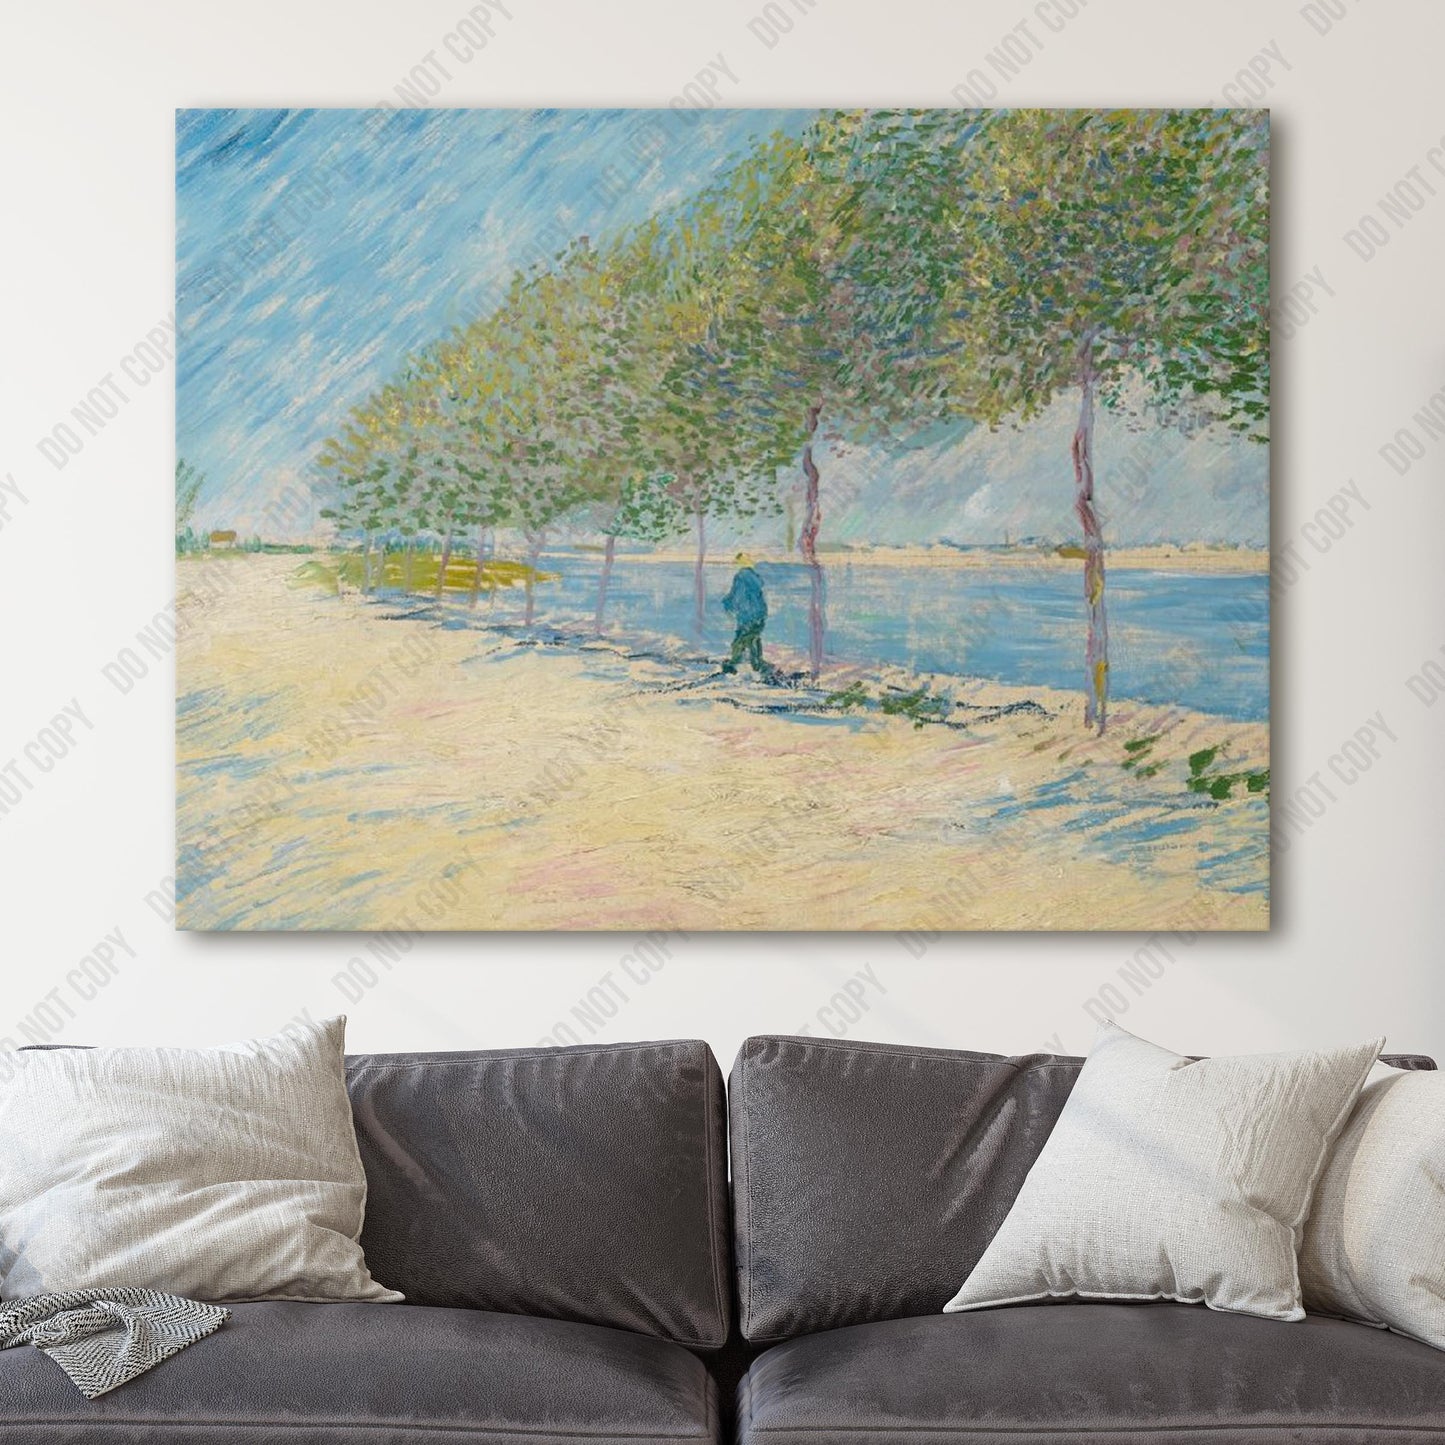 By the Seine (1887) by Van Gogh